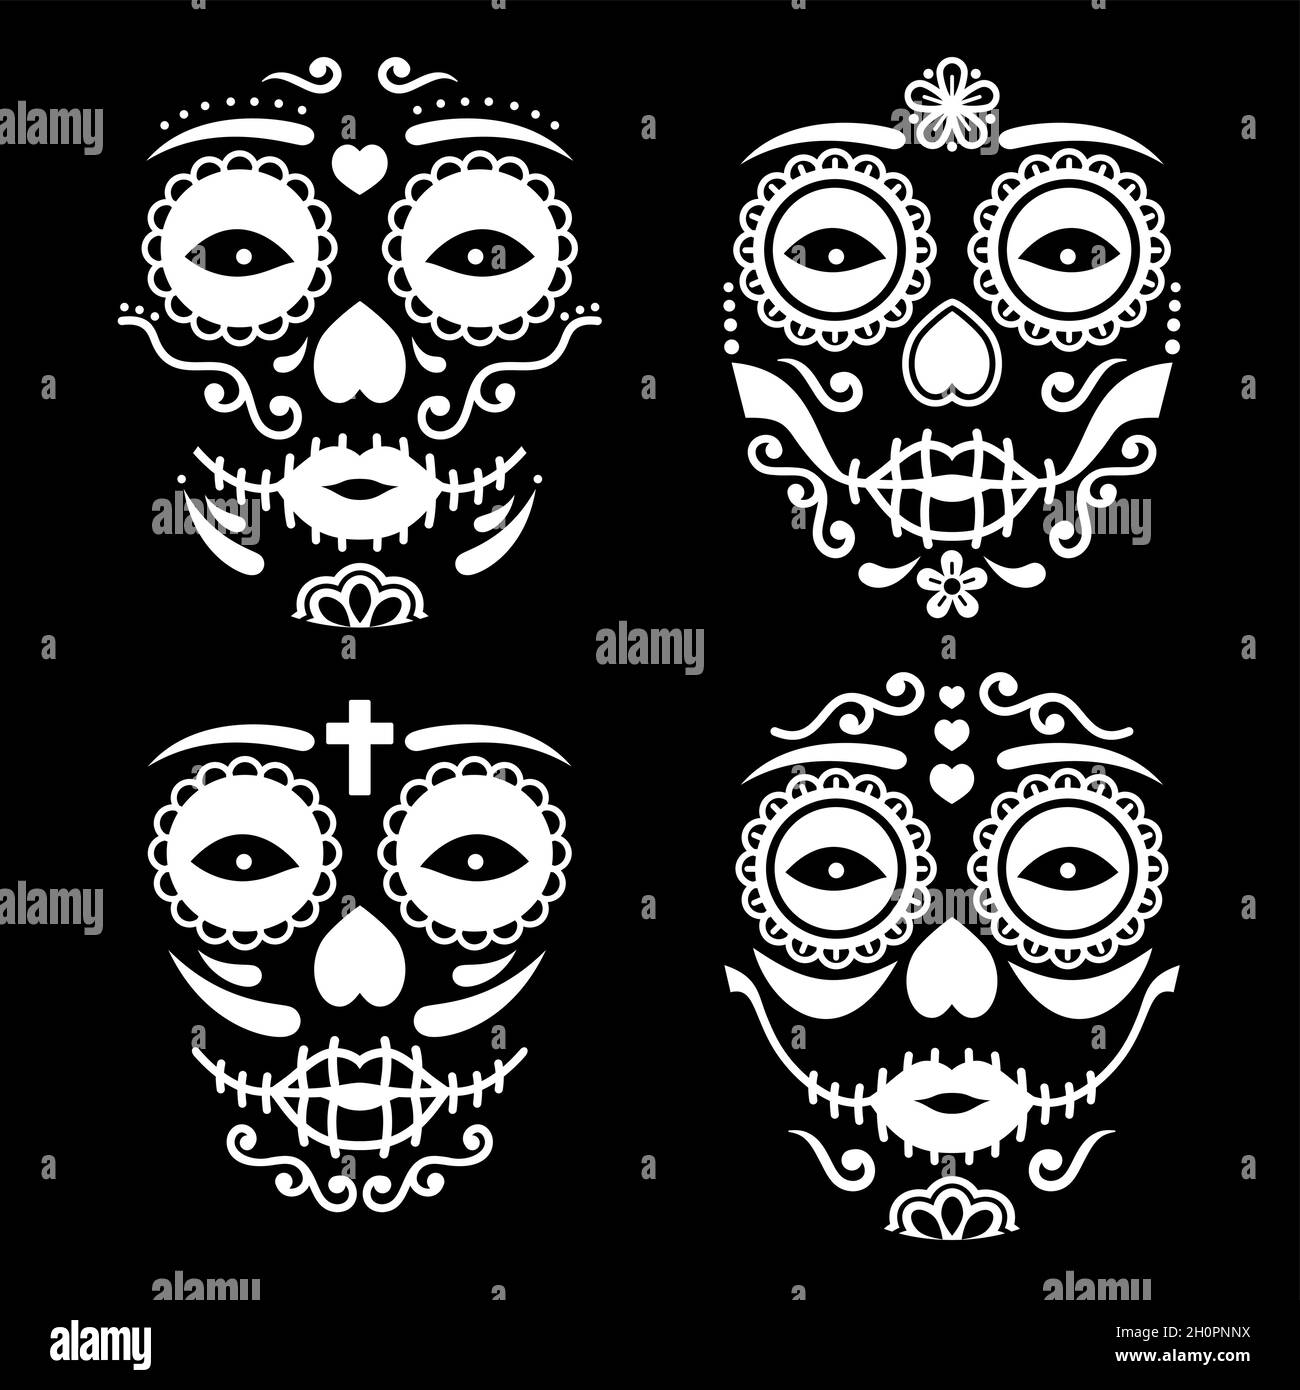 Mexikanisches La Catrina Gesichtsvektordesign, Dia de los Muertos oder Day of the Dead weiblicher Totenschädel in Weiß auf schwarzem Hintergrund Stock Vektor